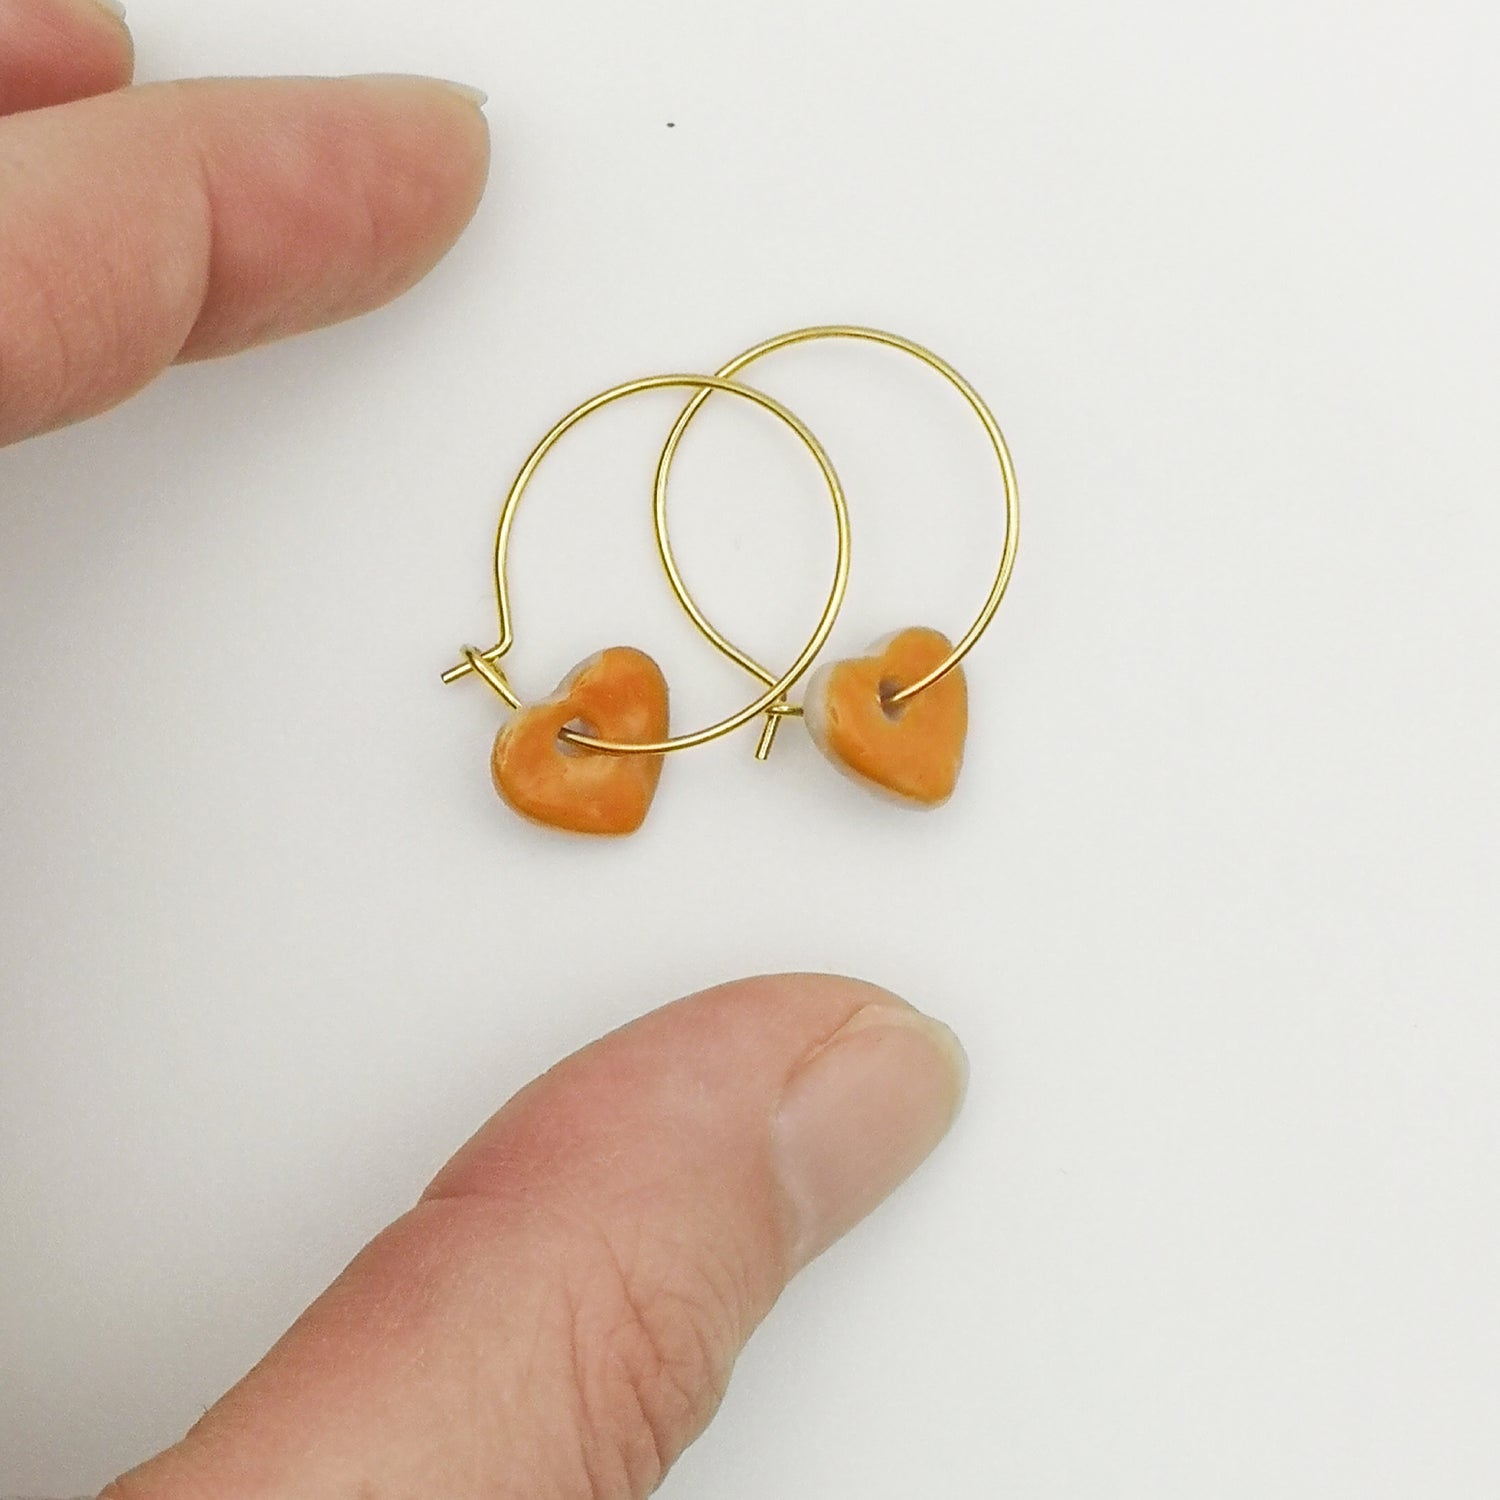 Boucles d'oreilles coeur orange et or pour femme aix en provence artisanat d'exception luxe idee cadeau